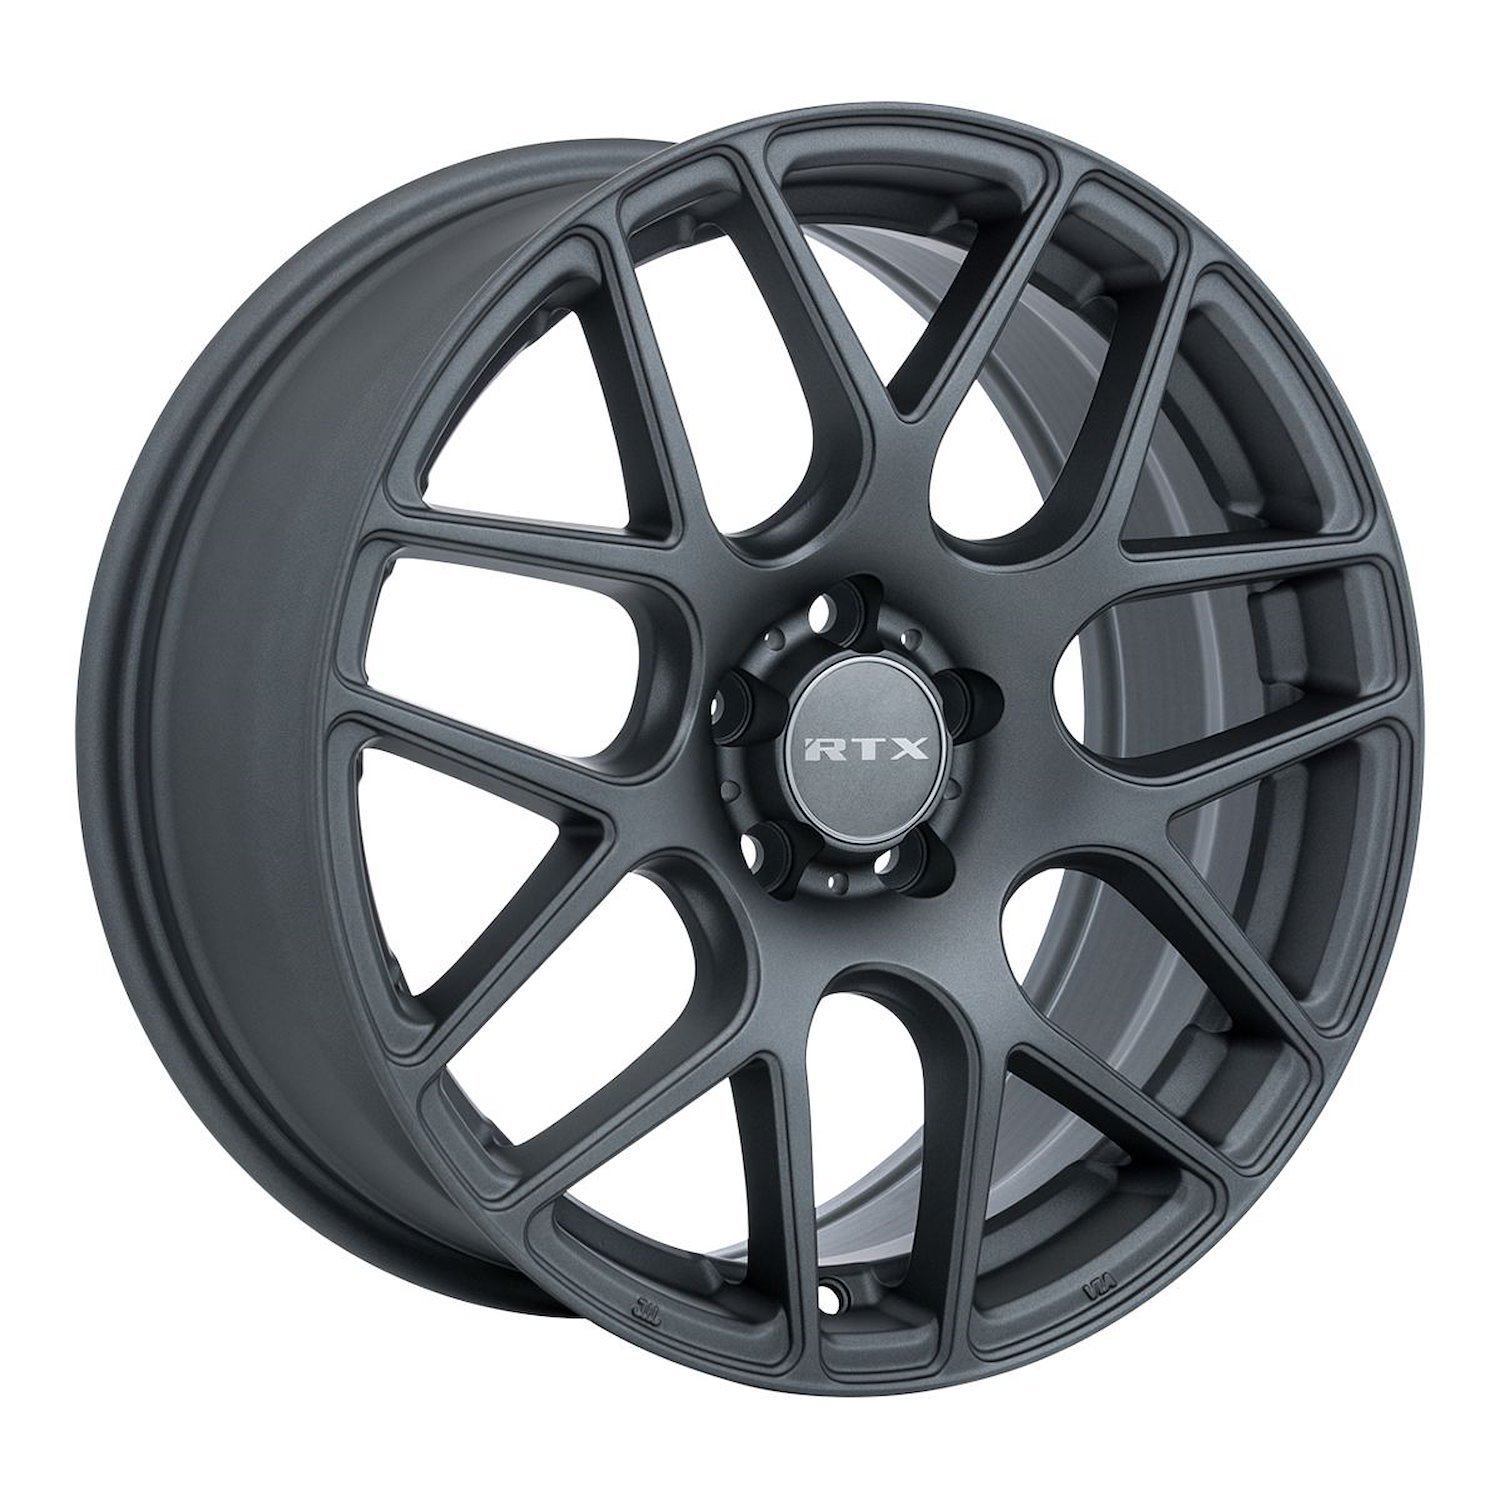 082779 RTX-Series Envy Wheel [Size: 19" x 8.50"] Matte Gunmetal Finish